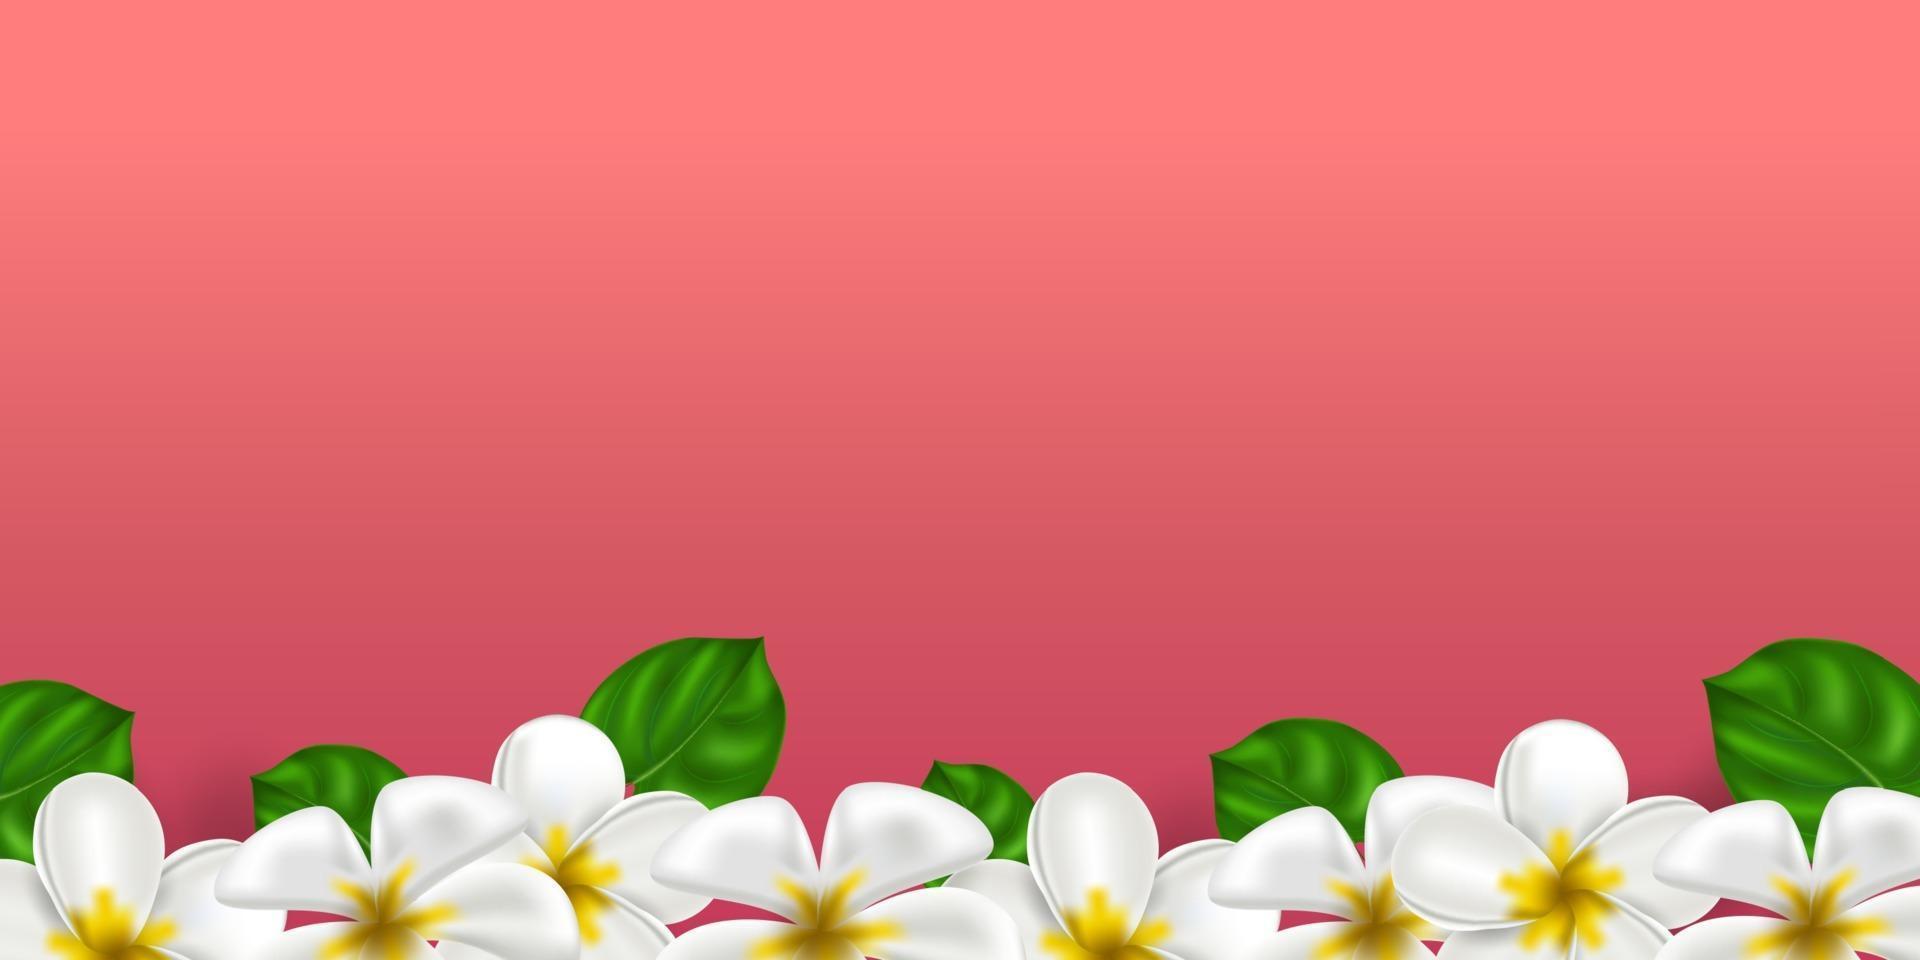 Vektor realistische tropische Hawaii Blume Plumeria. weiß-gelbe Farbe Frangipani auf einem korallenfarbenen Hintergrund. Sommerparadies. botanische Naturillustration für Banner und Karten. Blumenrahmen